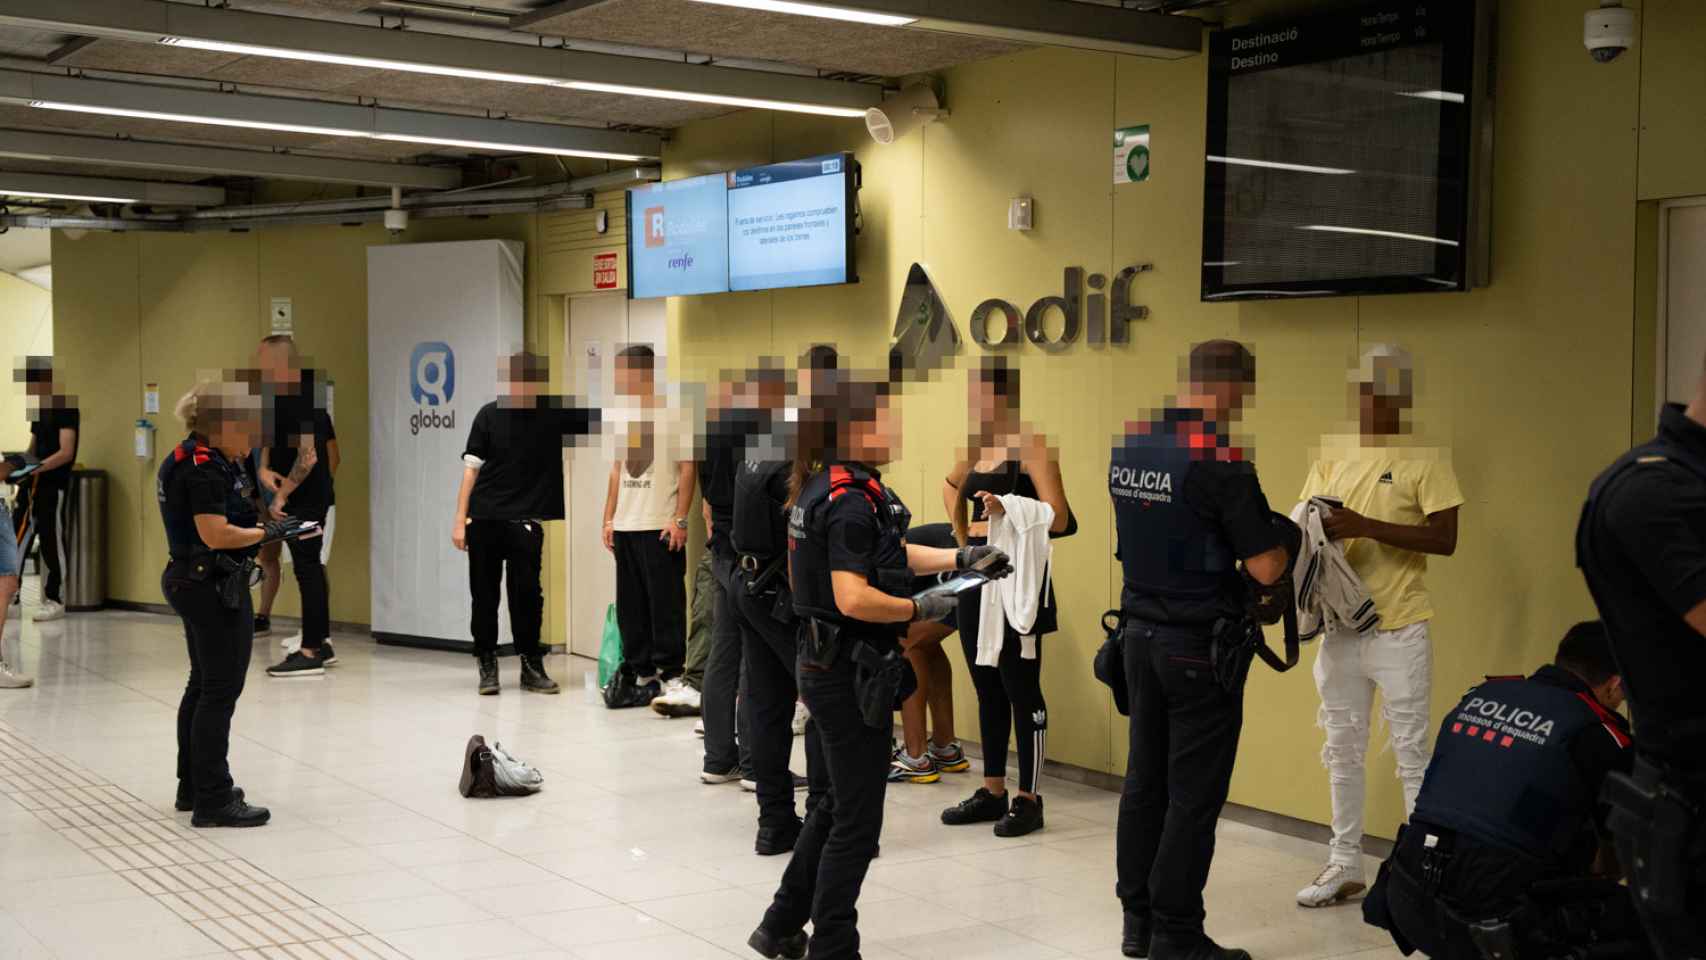 Operativo de Seguridad de Mossos d'Esquadra en conjunto a Policia Local de Sabadell y Policia Nacional en la estación de Renfe